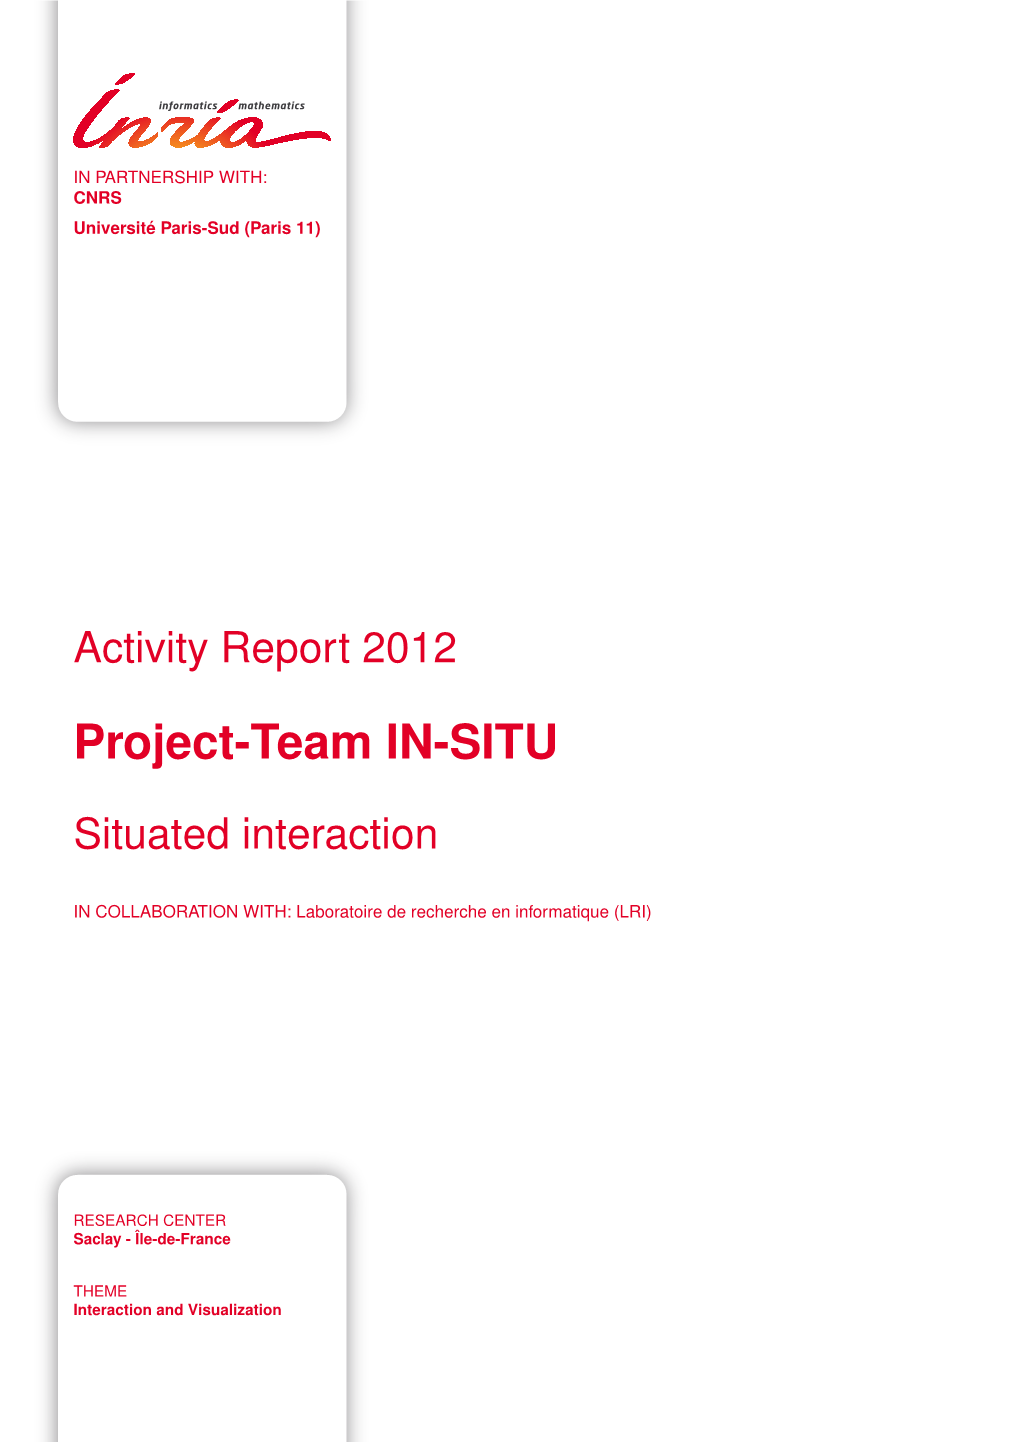 Project-Team IN-SITU